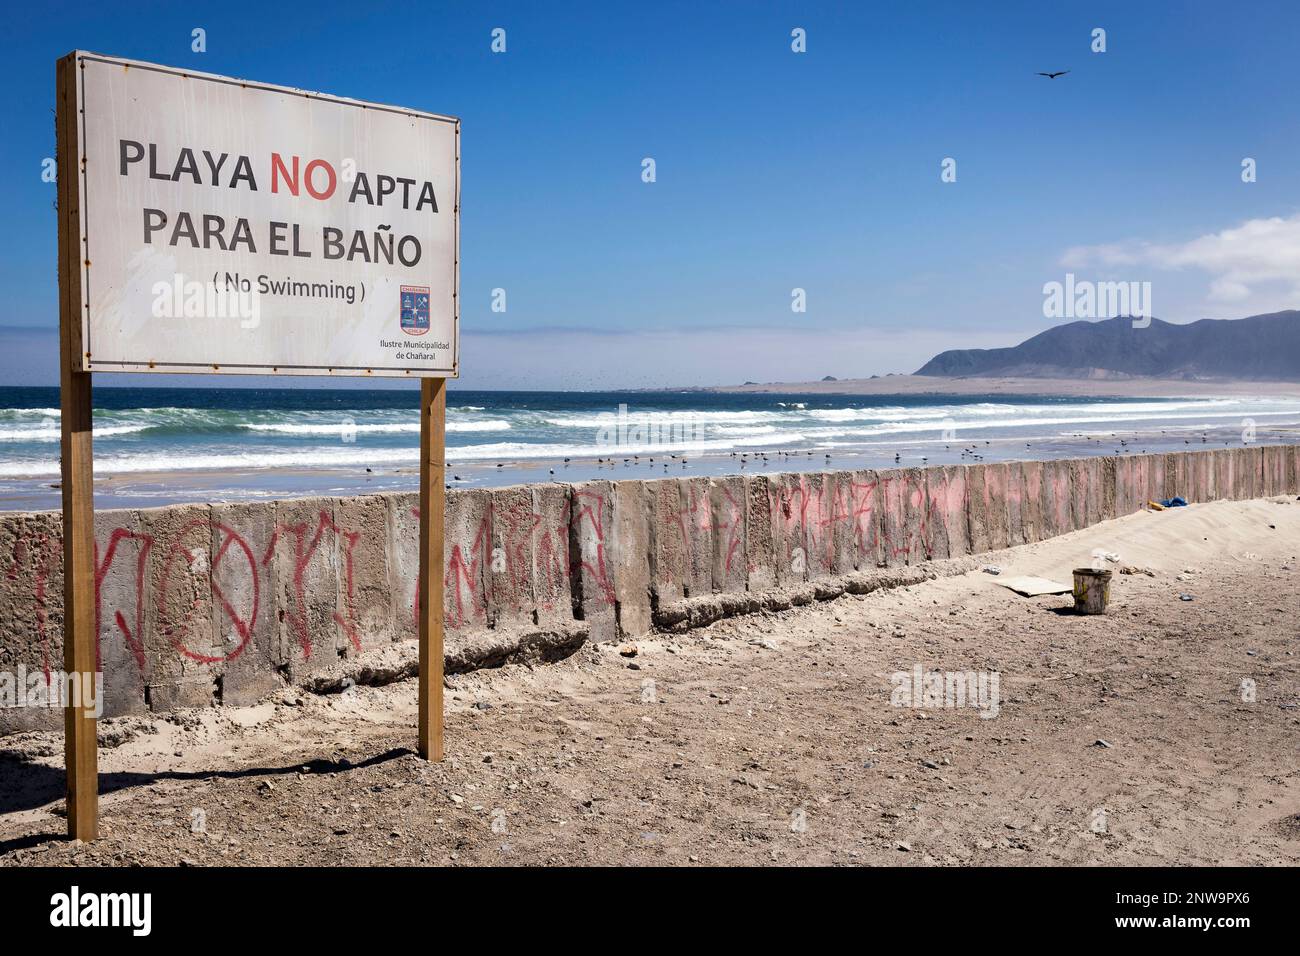 Kontaminierter Strand In Chañaral Chile Mit Schild Auf Spanisch, Auf Dem Steht „Strand Nicht Zum Schwimmen Geeignet“ (Playa No Apta Para El Baño) Stockfoto